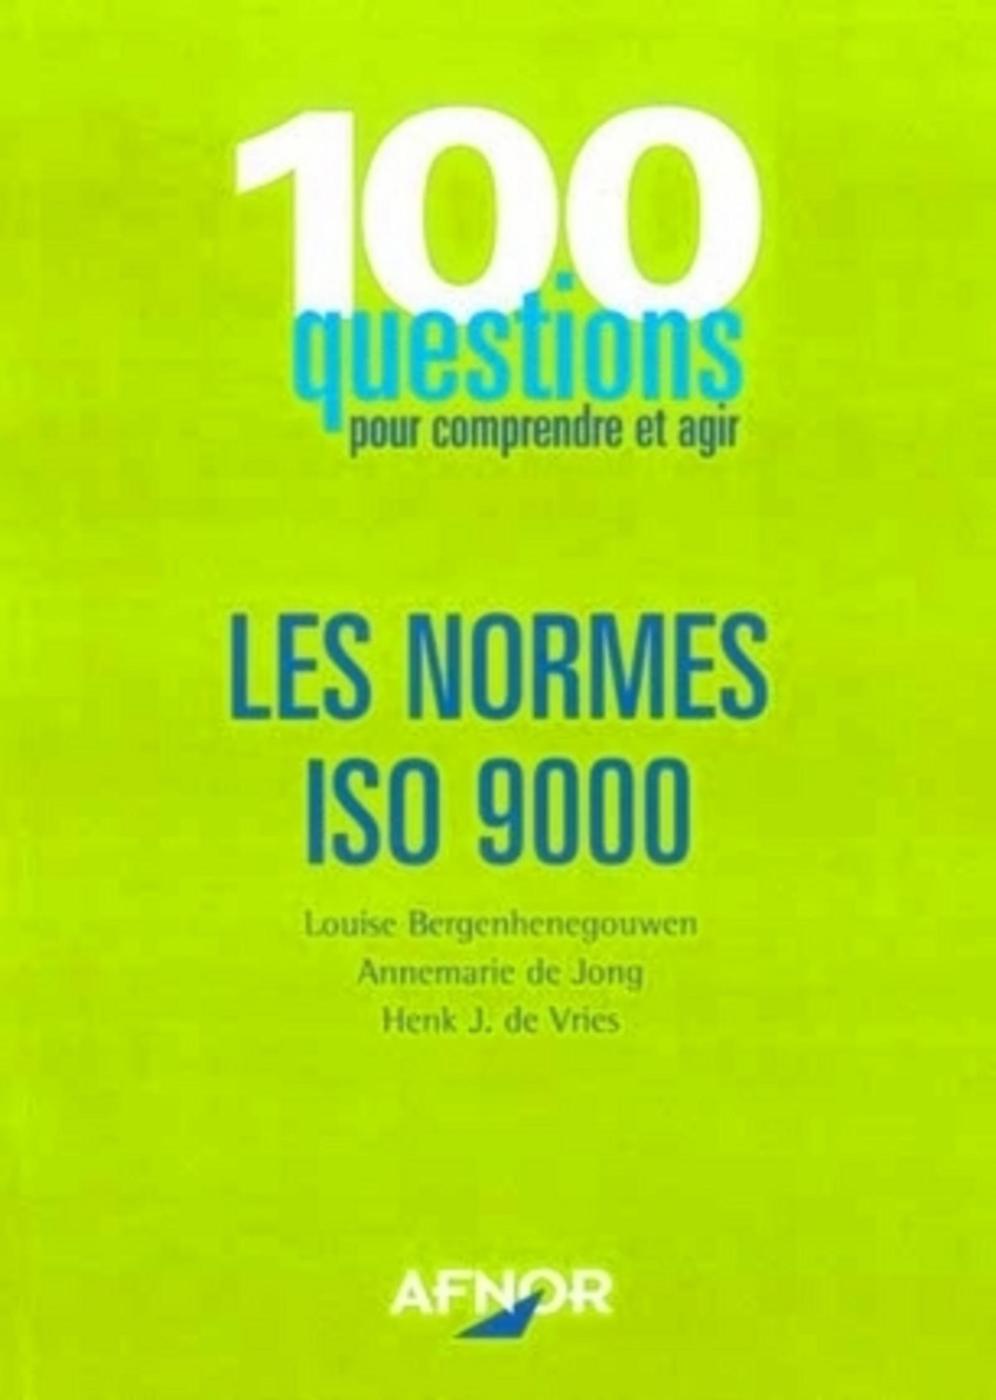 Les normes ISO 9000 - 100 questions pour comprendre et agir - Louise... - Librairie Eyrolles